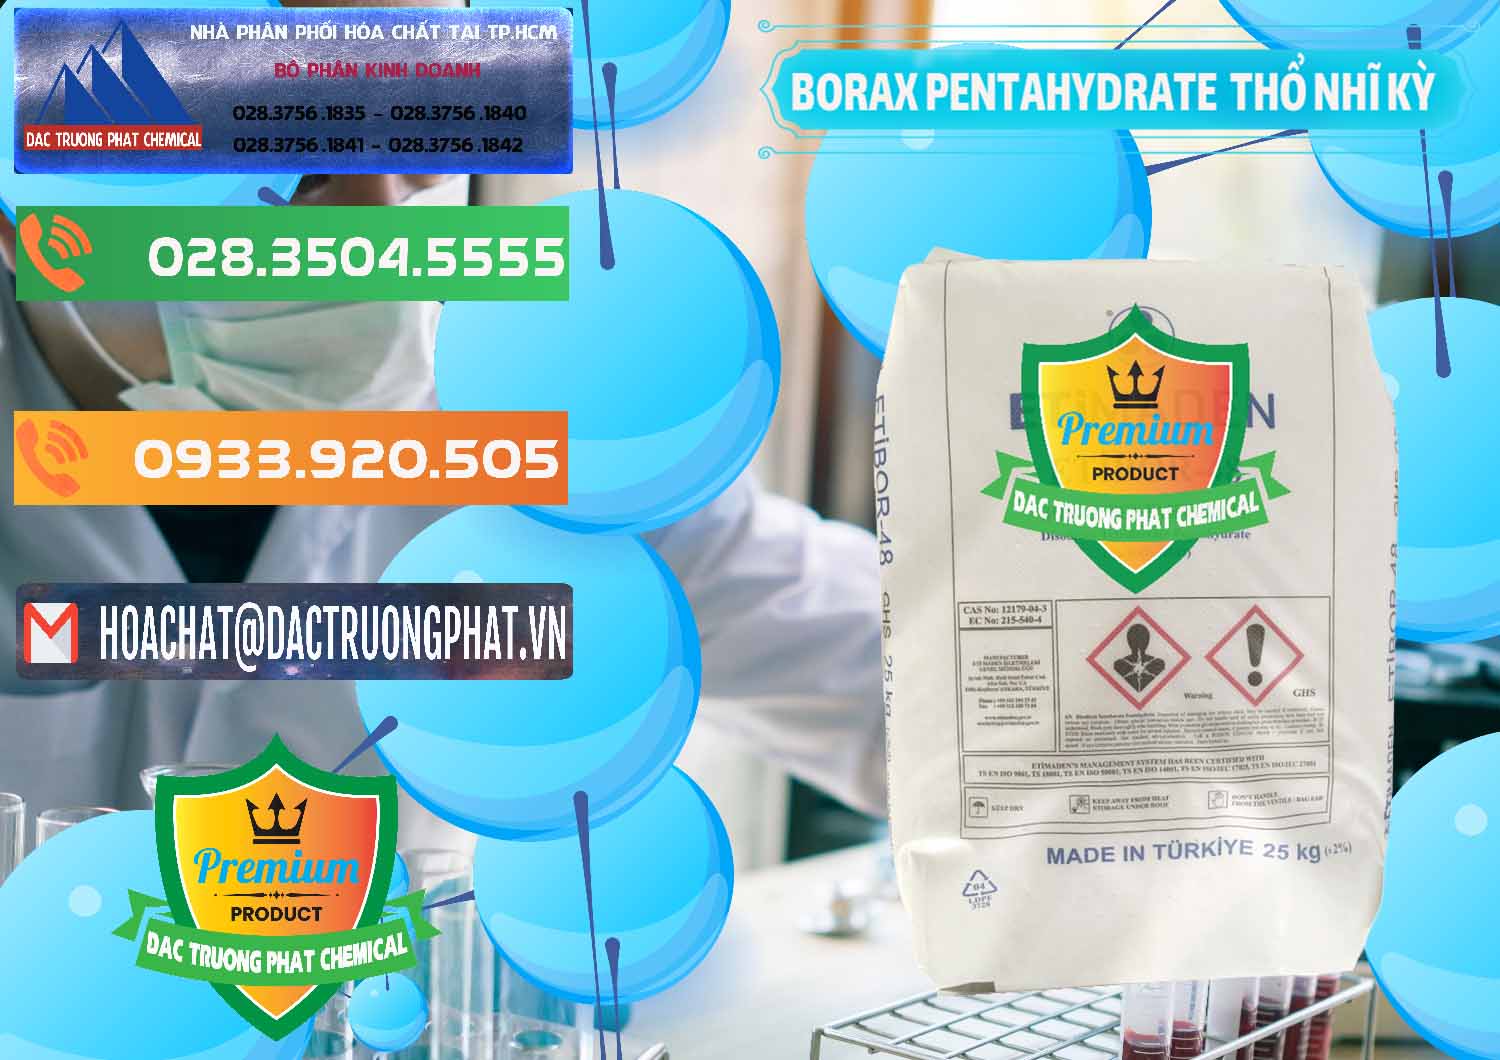 Nơi chuyên cung cấp & bán Borax Pentahydrate Thổ Nhĩ Kỳ Turkey - 0431 - Nơi chuyên nhập khẩu & cung cấp hóa chất tại TP.HCM - hoachatxulynuoc.com.vn